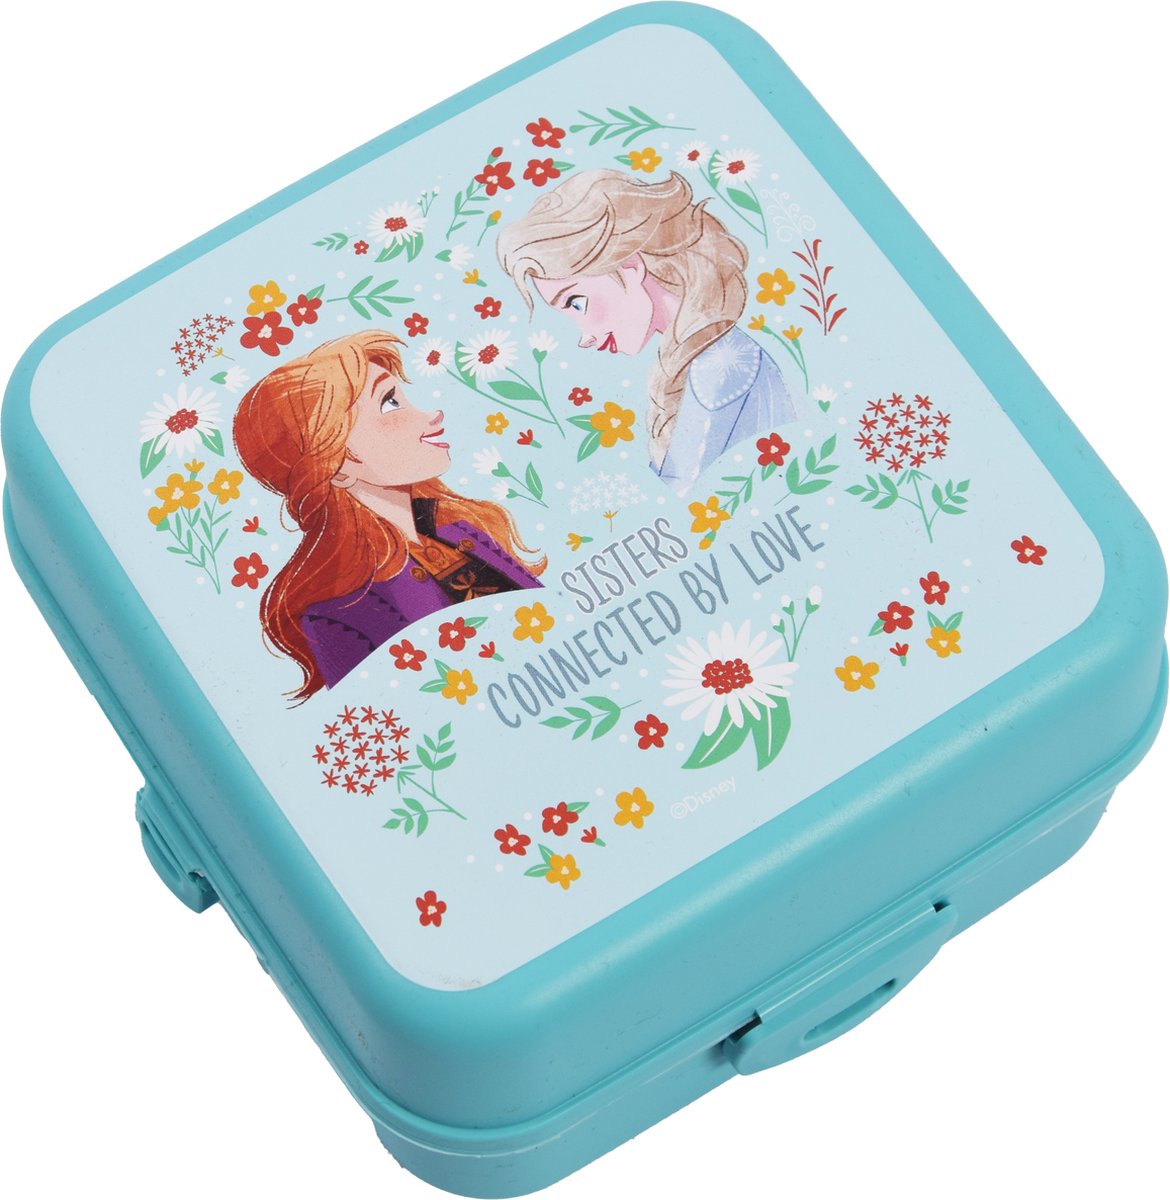 Frozen Elsa & Anna Broodtrommel voor Kinderen - Multivakken Design - Ideaal voor Gezonde en Gevarieerde Kindersnacks - Duurzaam & BPA-vrij